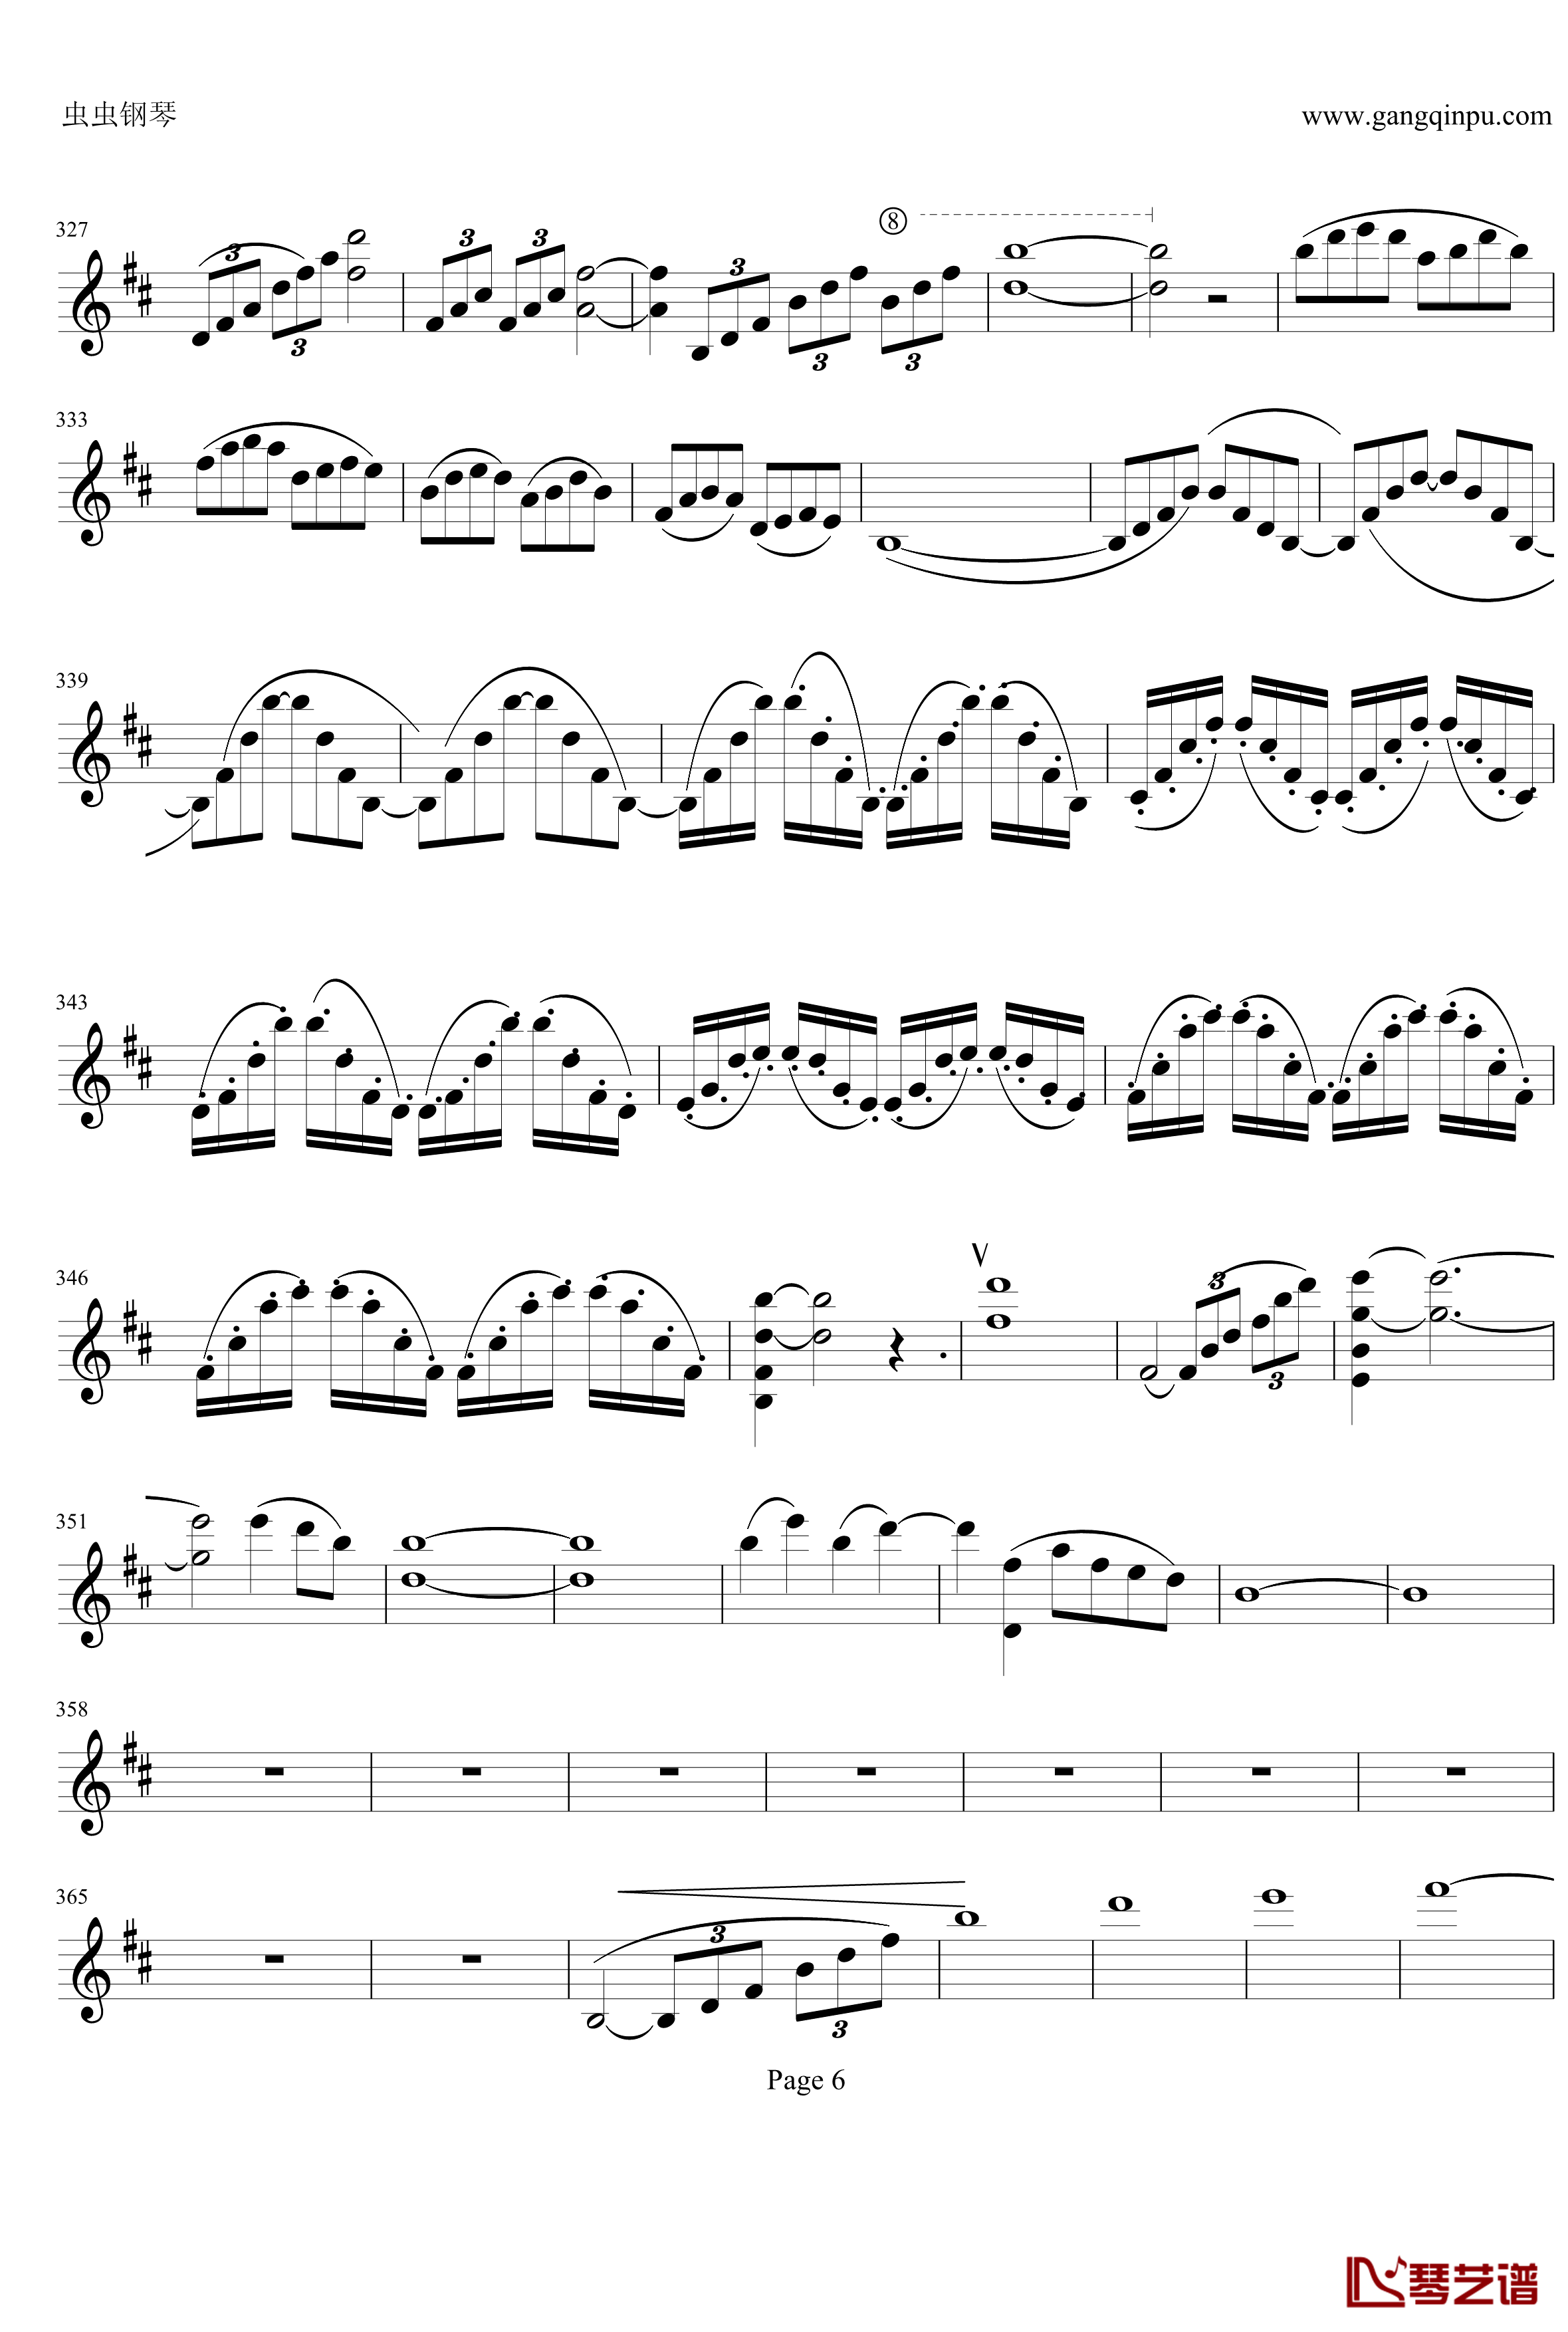 云南风情钢琴谱-第一乐章-b小调小提琴协奏曲-项道荣6